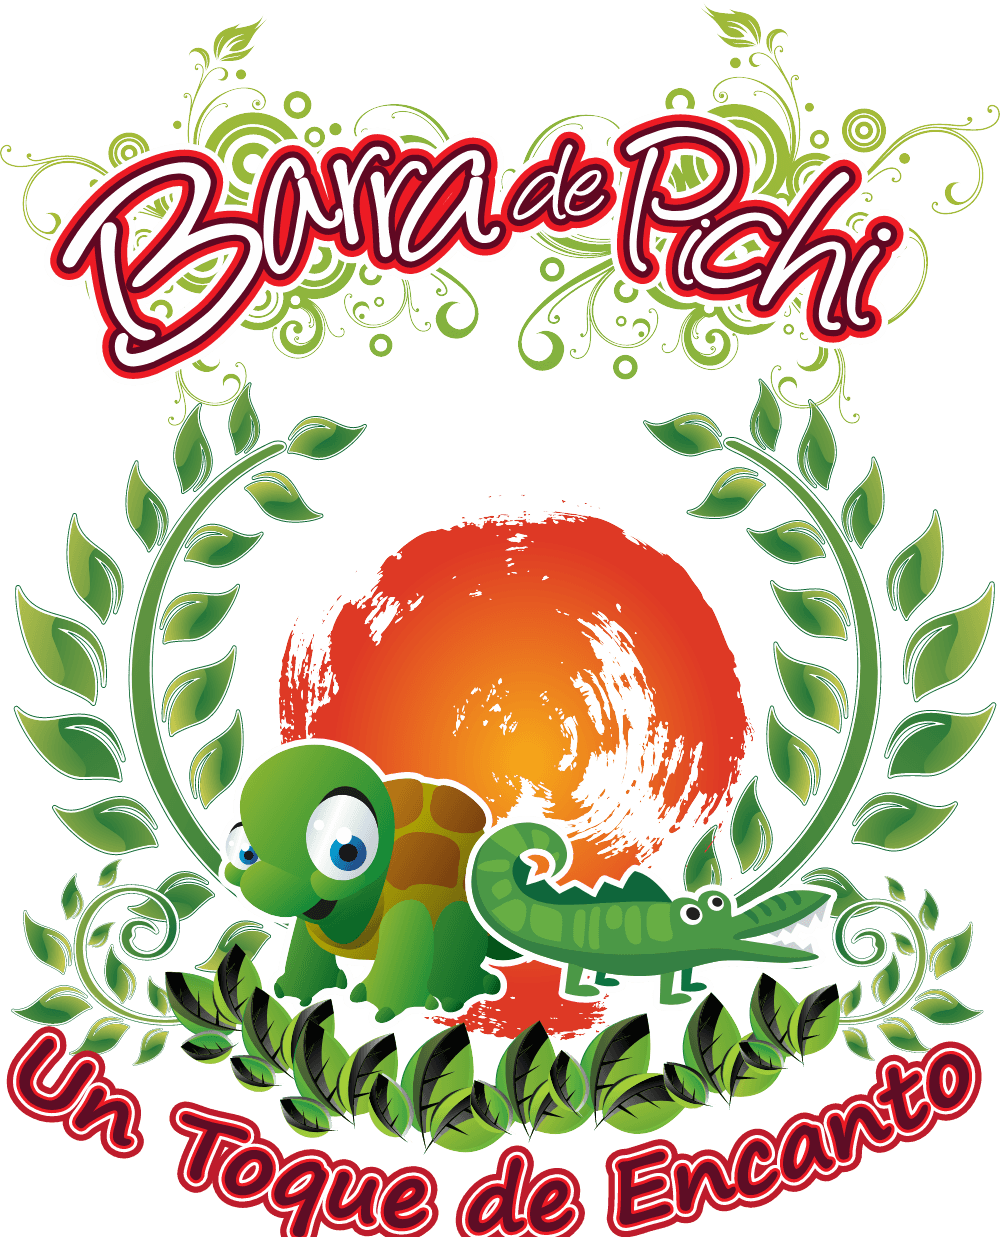 Barra de Pichi Logo download